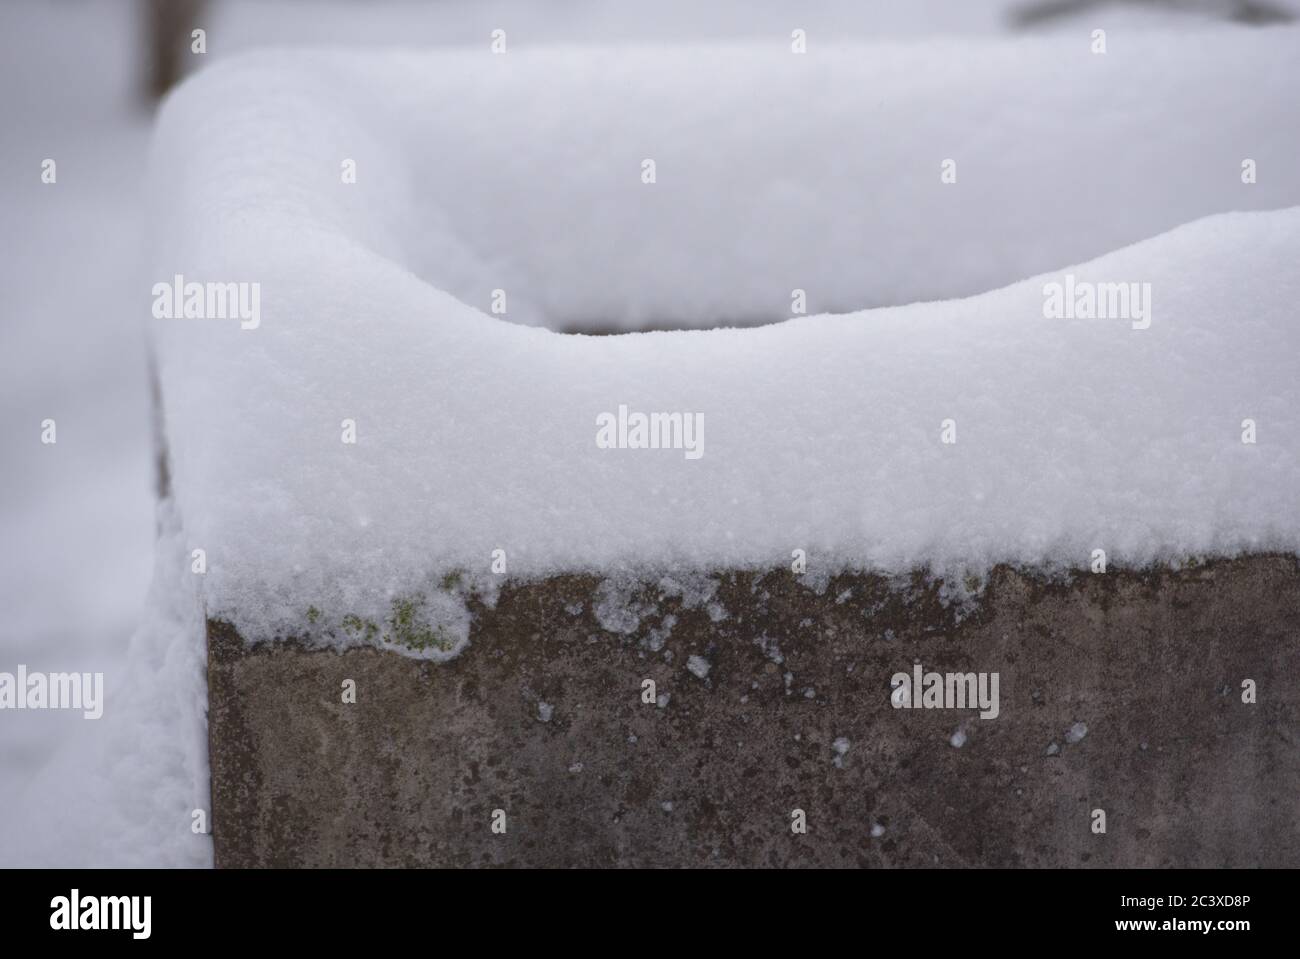 Detailaufnahme eines Brunnen mit Schnee Stock Photo